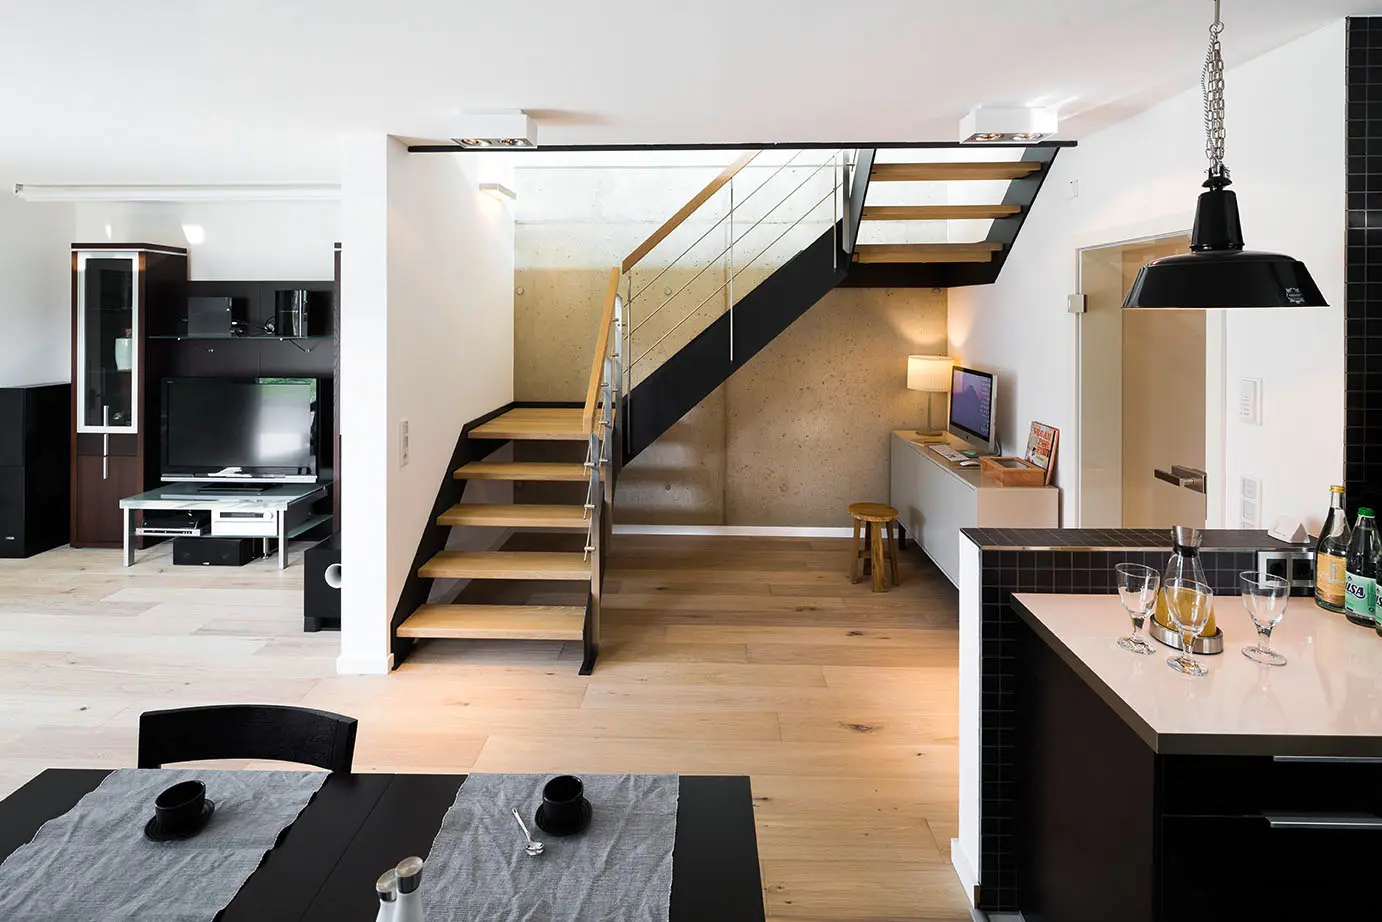 Ein modernes Kücheninterieur mit einer Treppe, die zu einer oberen Ebene führt, mit einem schwarzen Esstisch, einer Kücheninsel mit Barhockern und einem offenen Grundriss. Die Treppe ist hochwertig verarbeitet